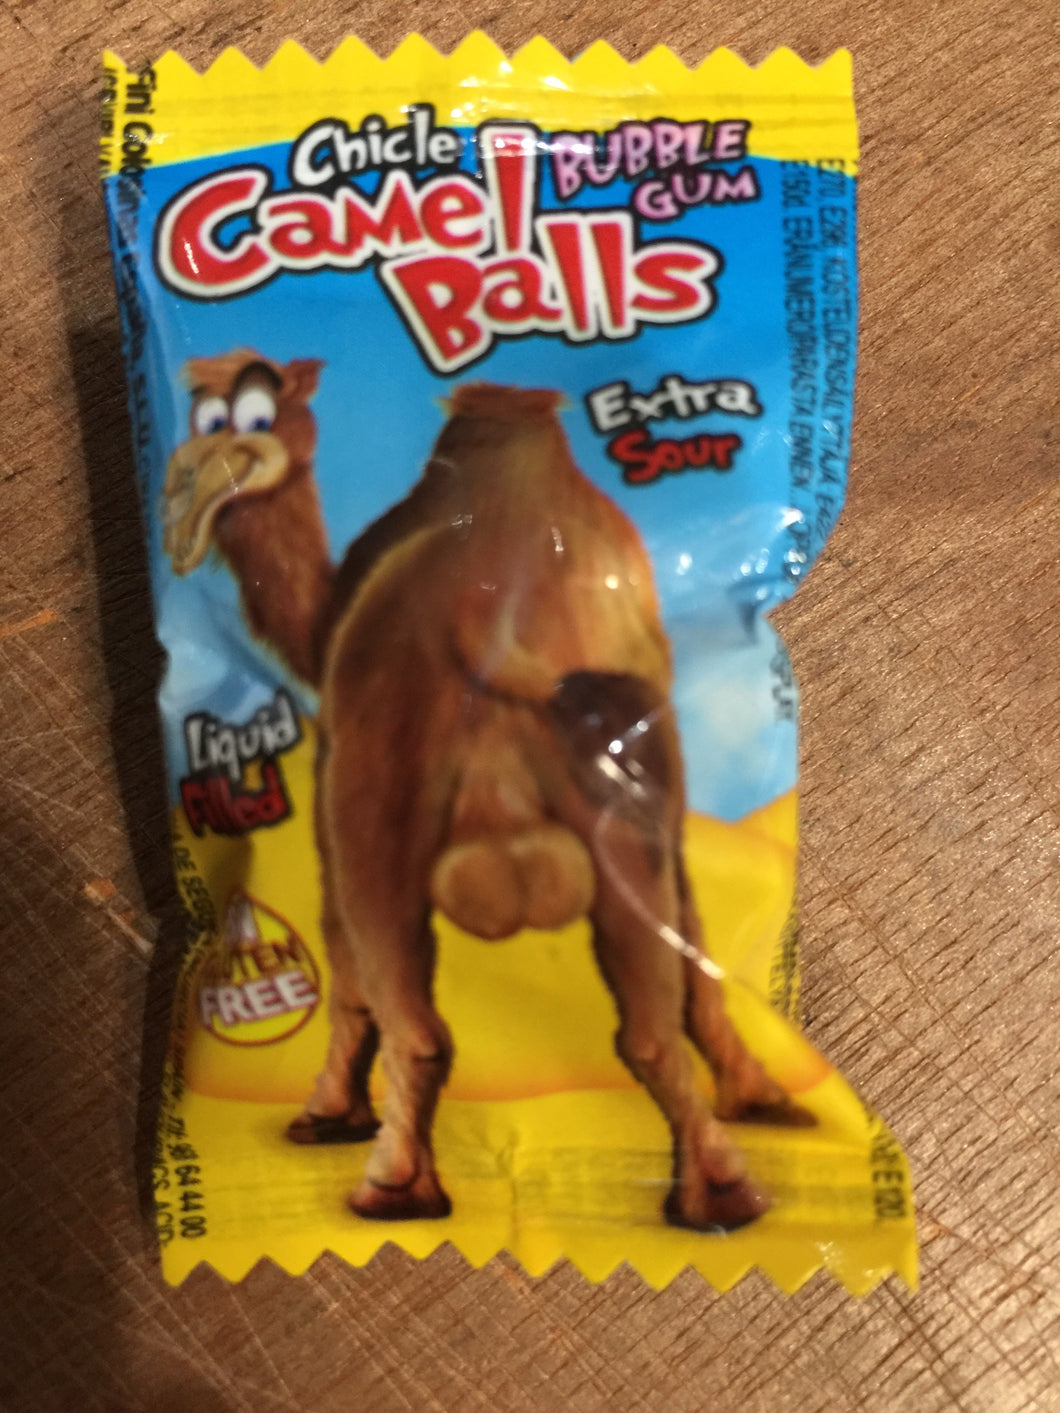 Camel Balls Bubble Gum Extra Sour 5g